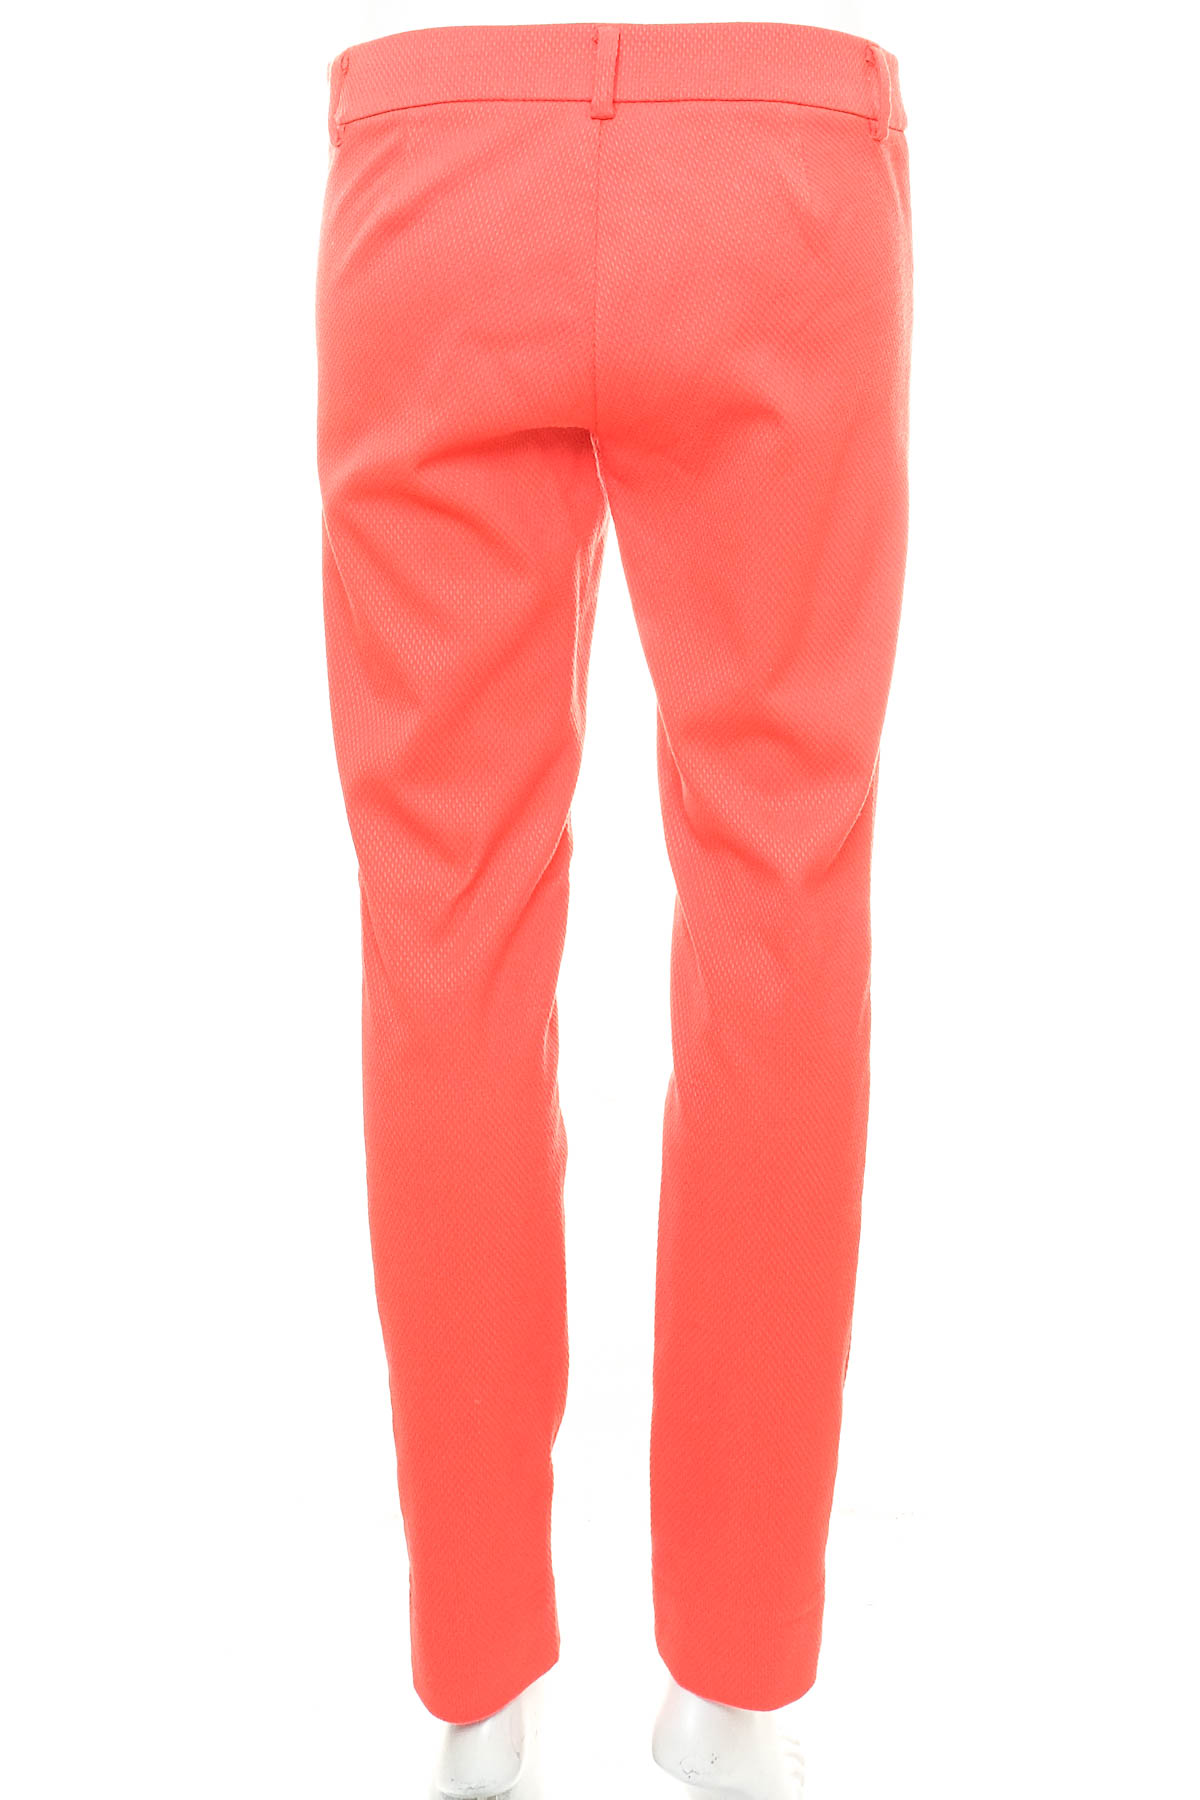 Pantaloni de damă - United Colors of Benetton - 1